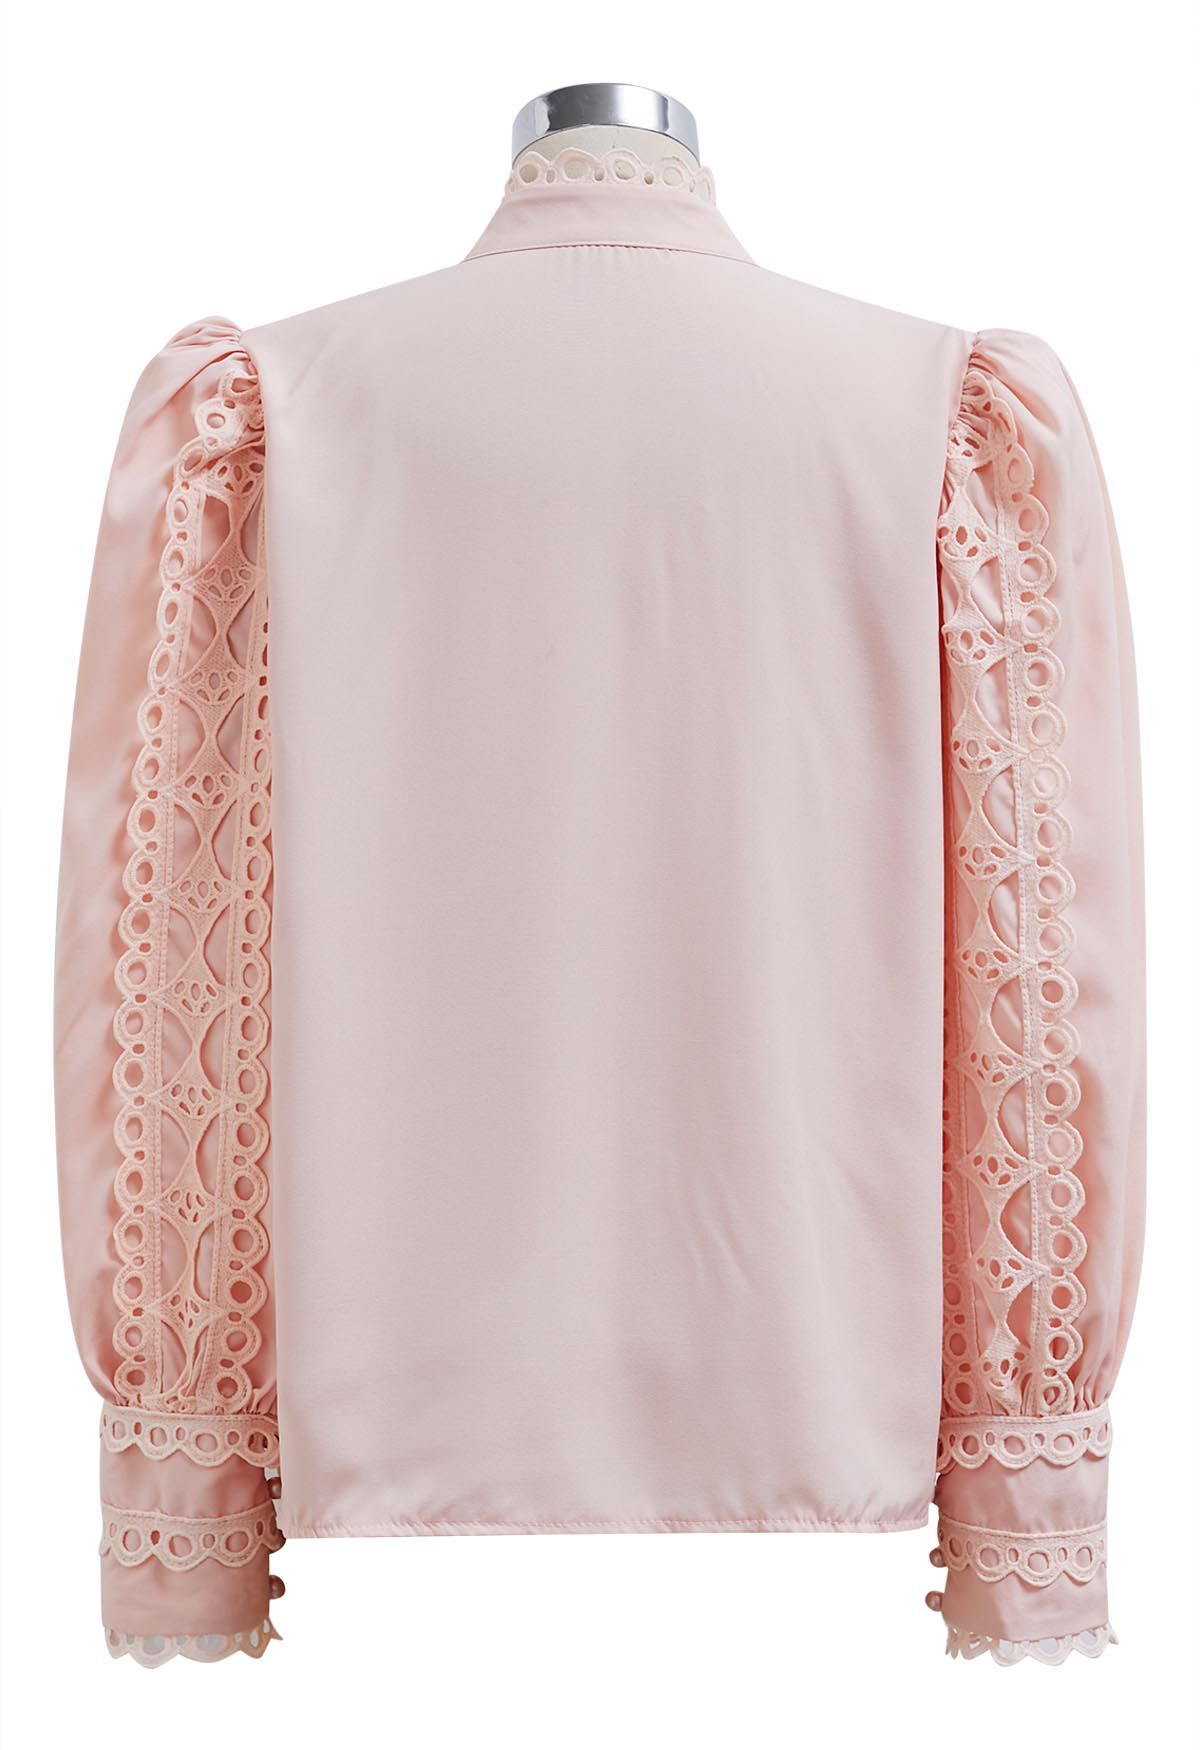 Exquisita camisa con botones y mangas de burbujas en color rosa